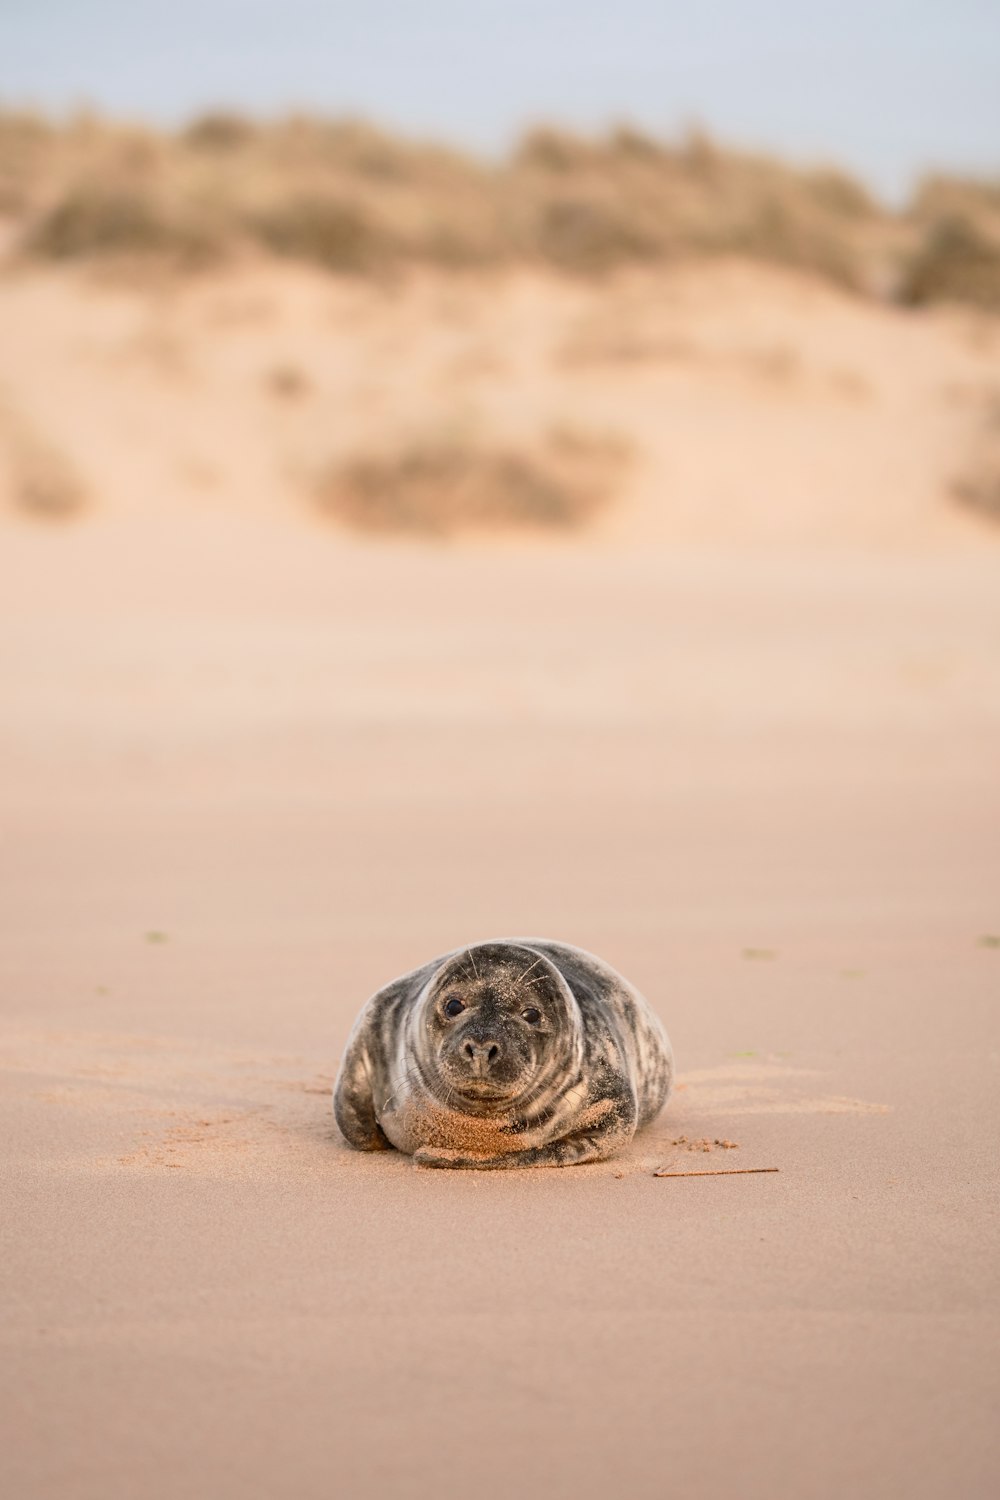 a turtle on a sandy beach